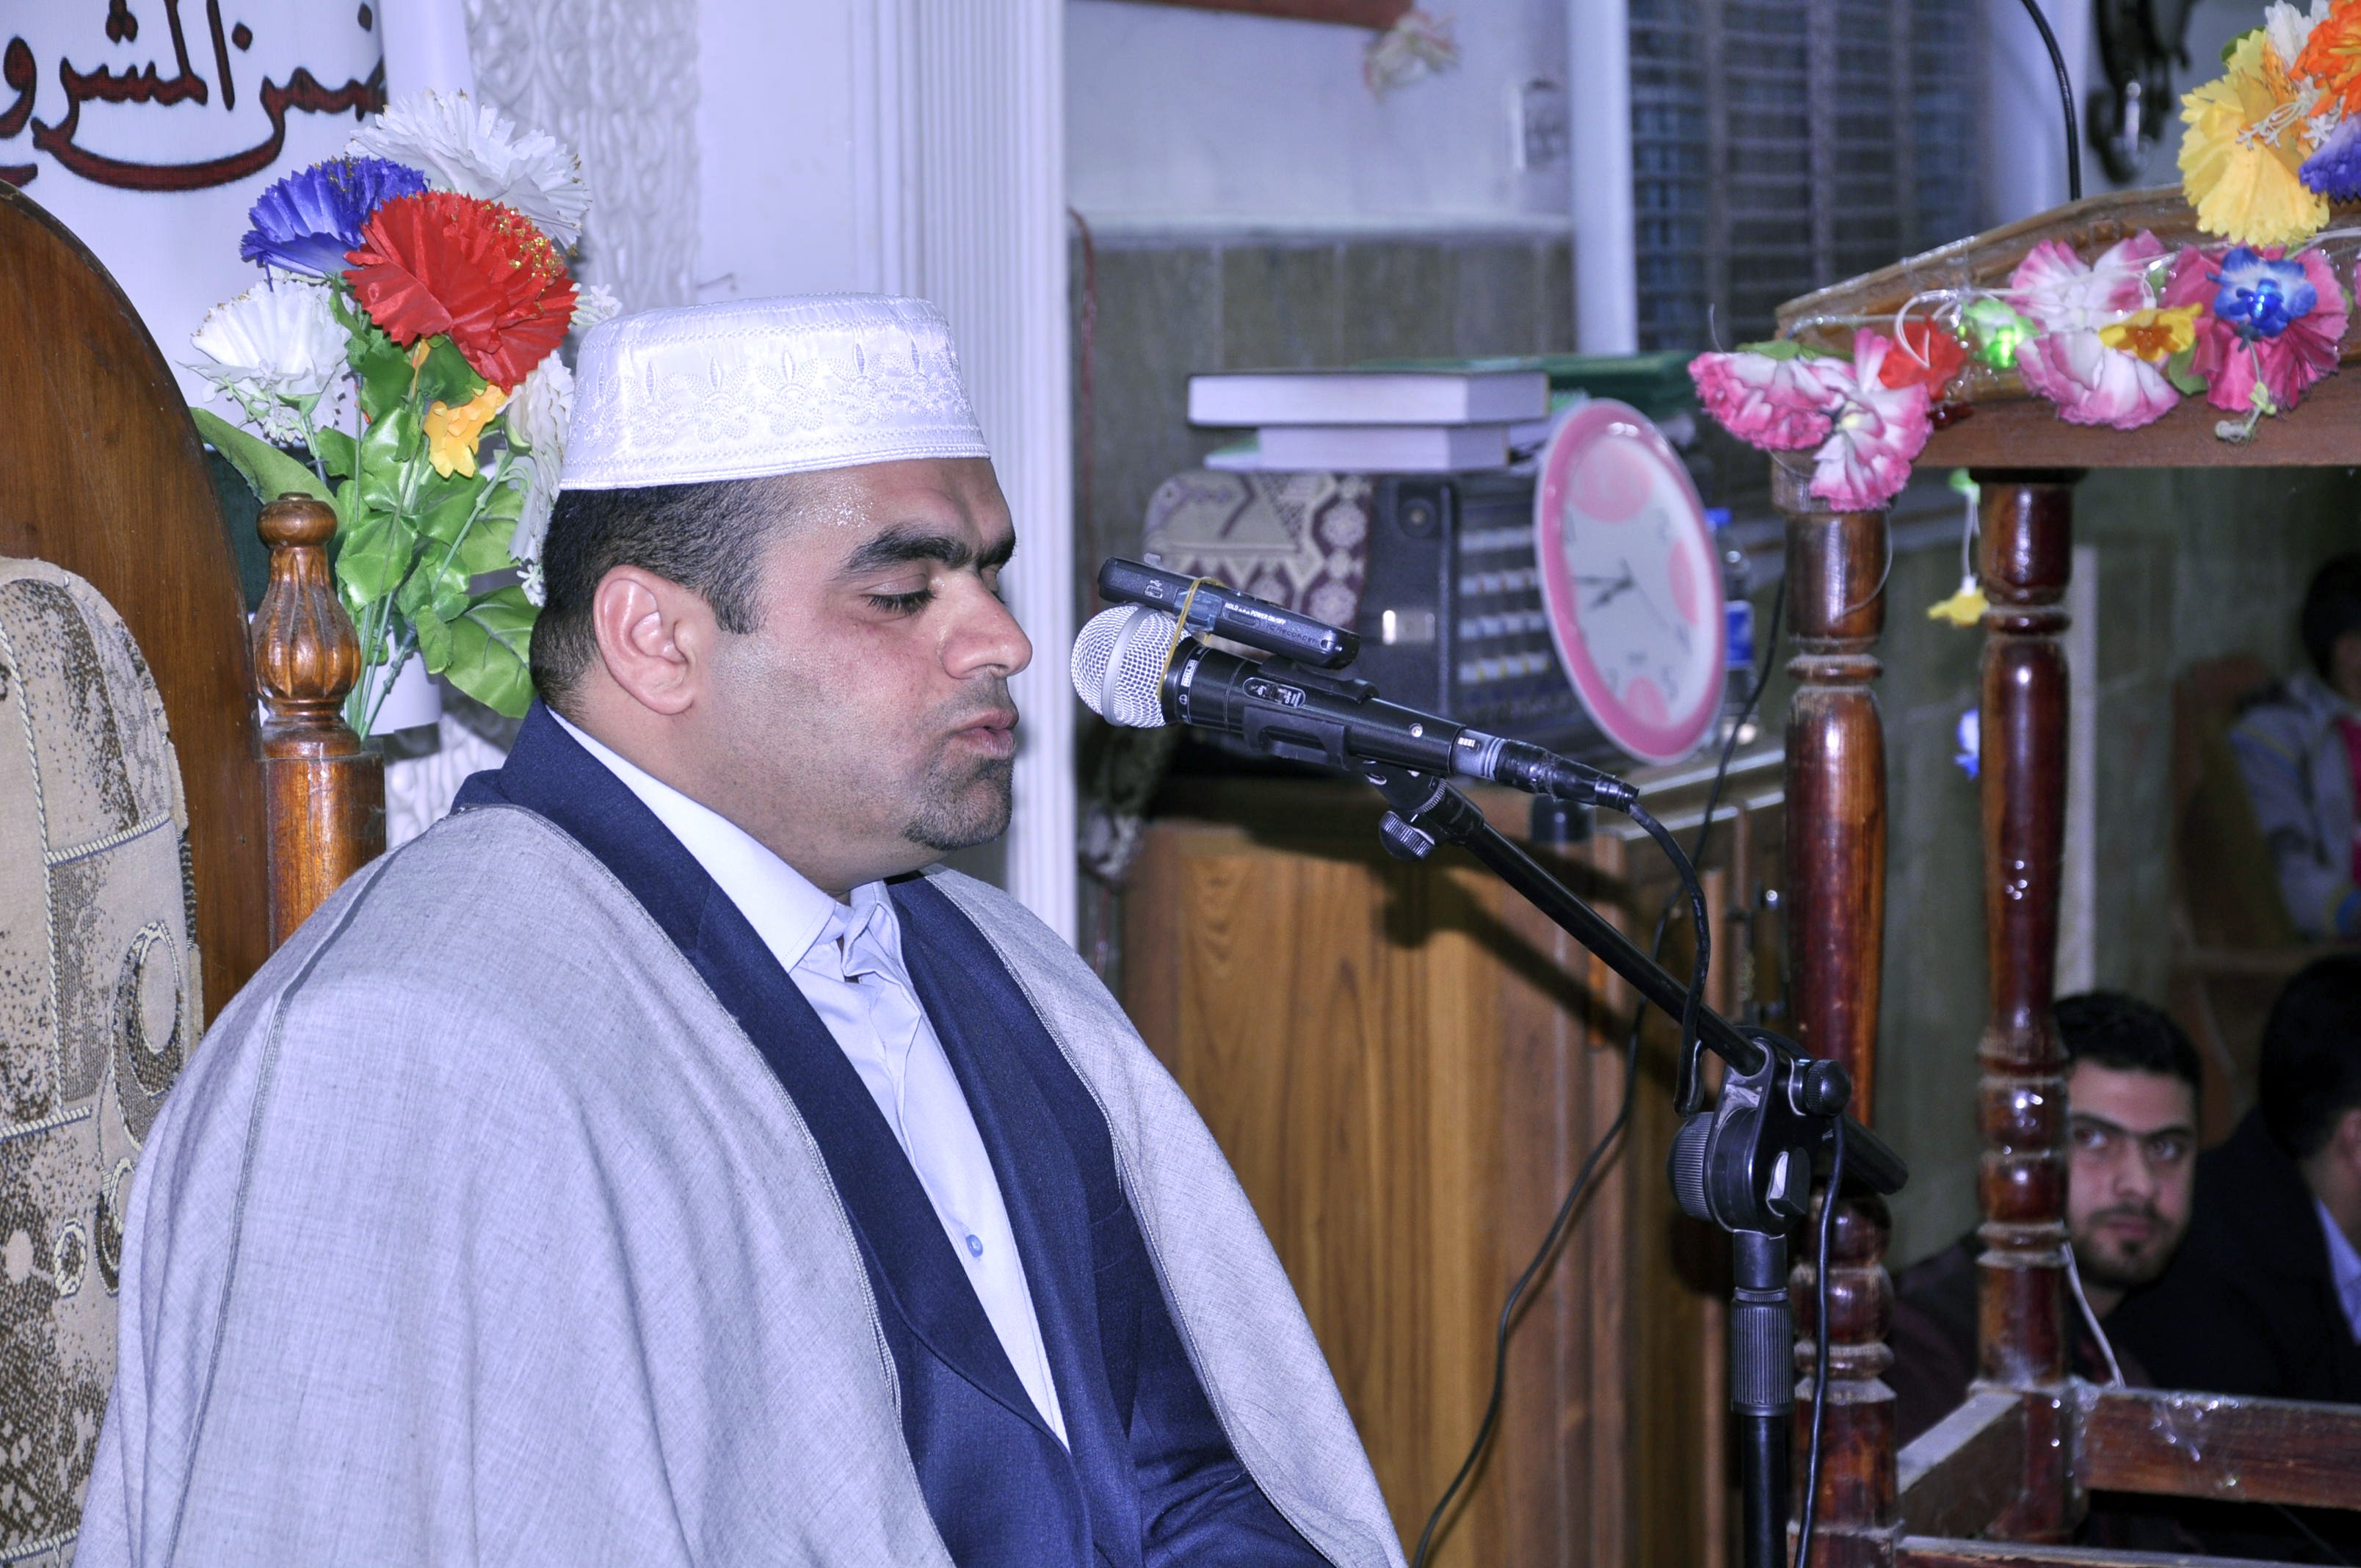 معهد القرآن الكريم يقيم محفلين قرآنيين في بغداد وميسان  احتفاءً بتخرج الدورة الثالثة عشر والرابعة عشر في الصوت والنغم